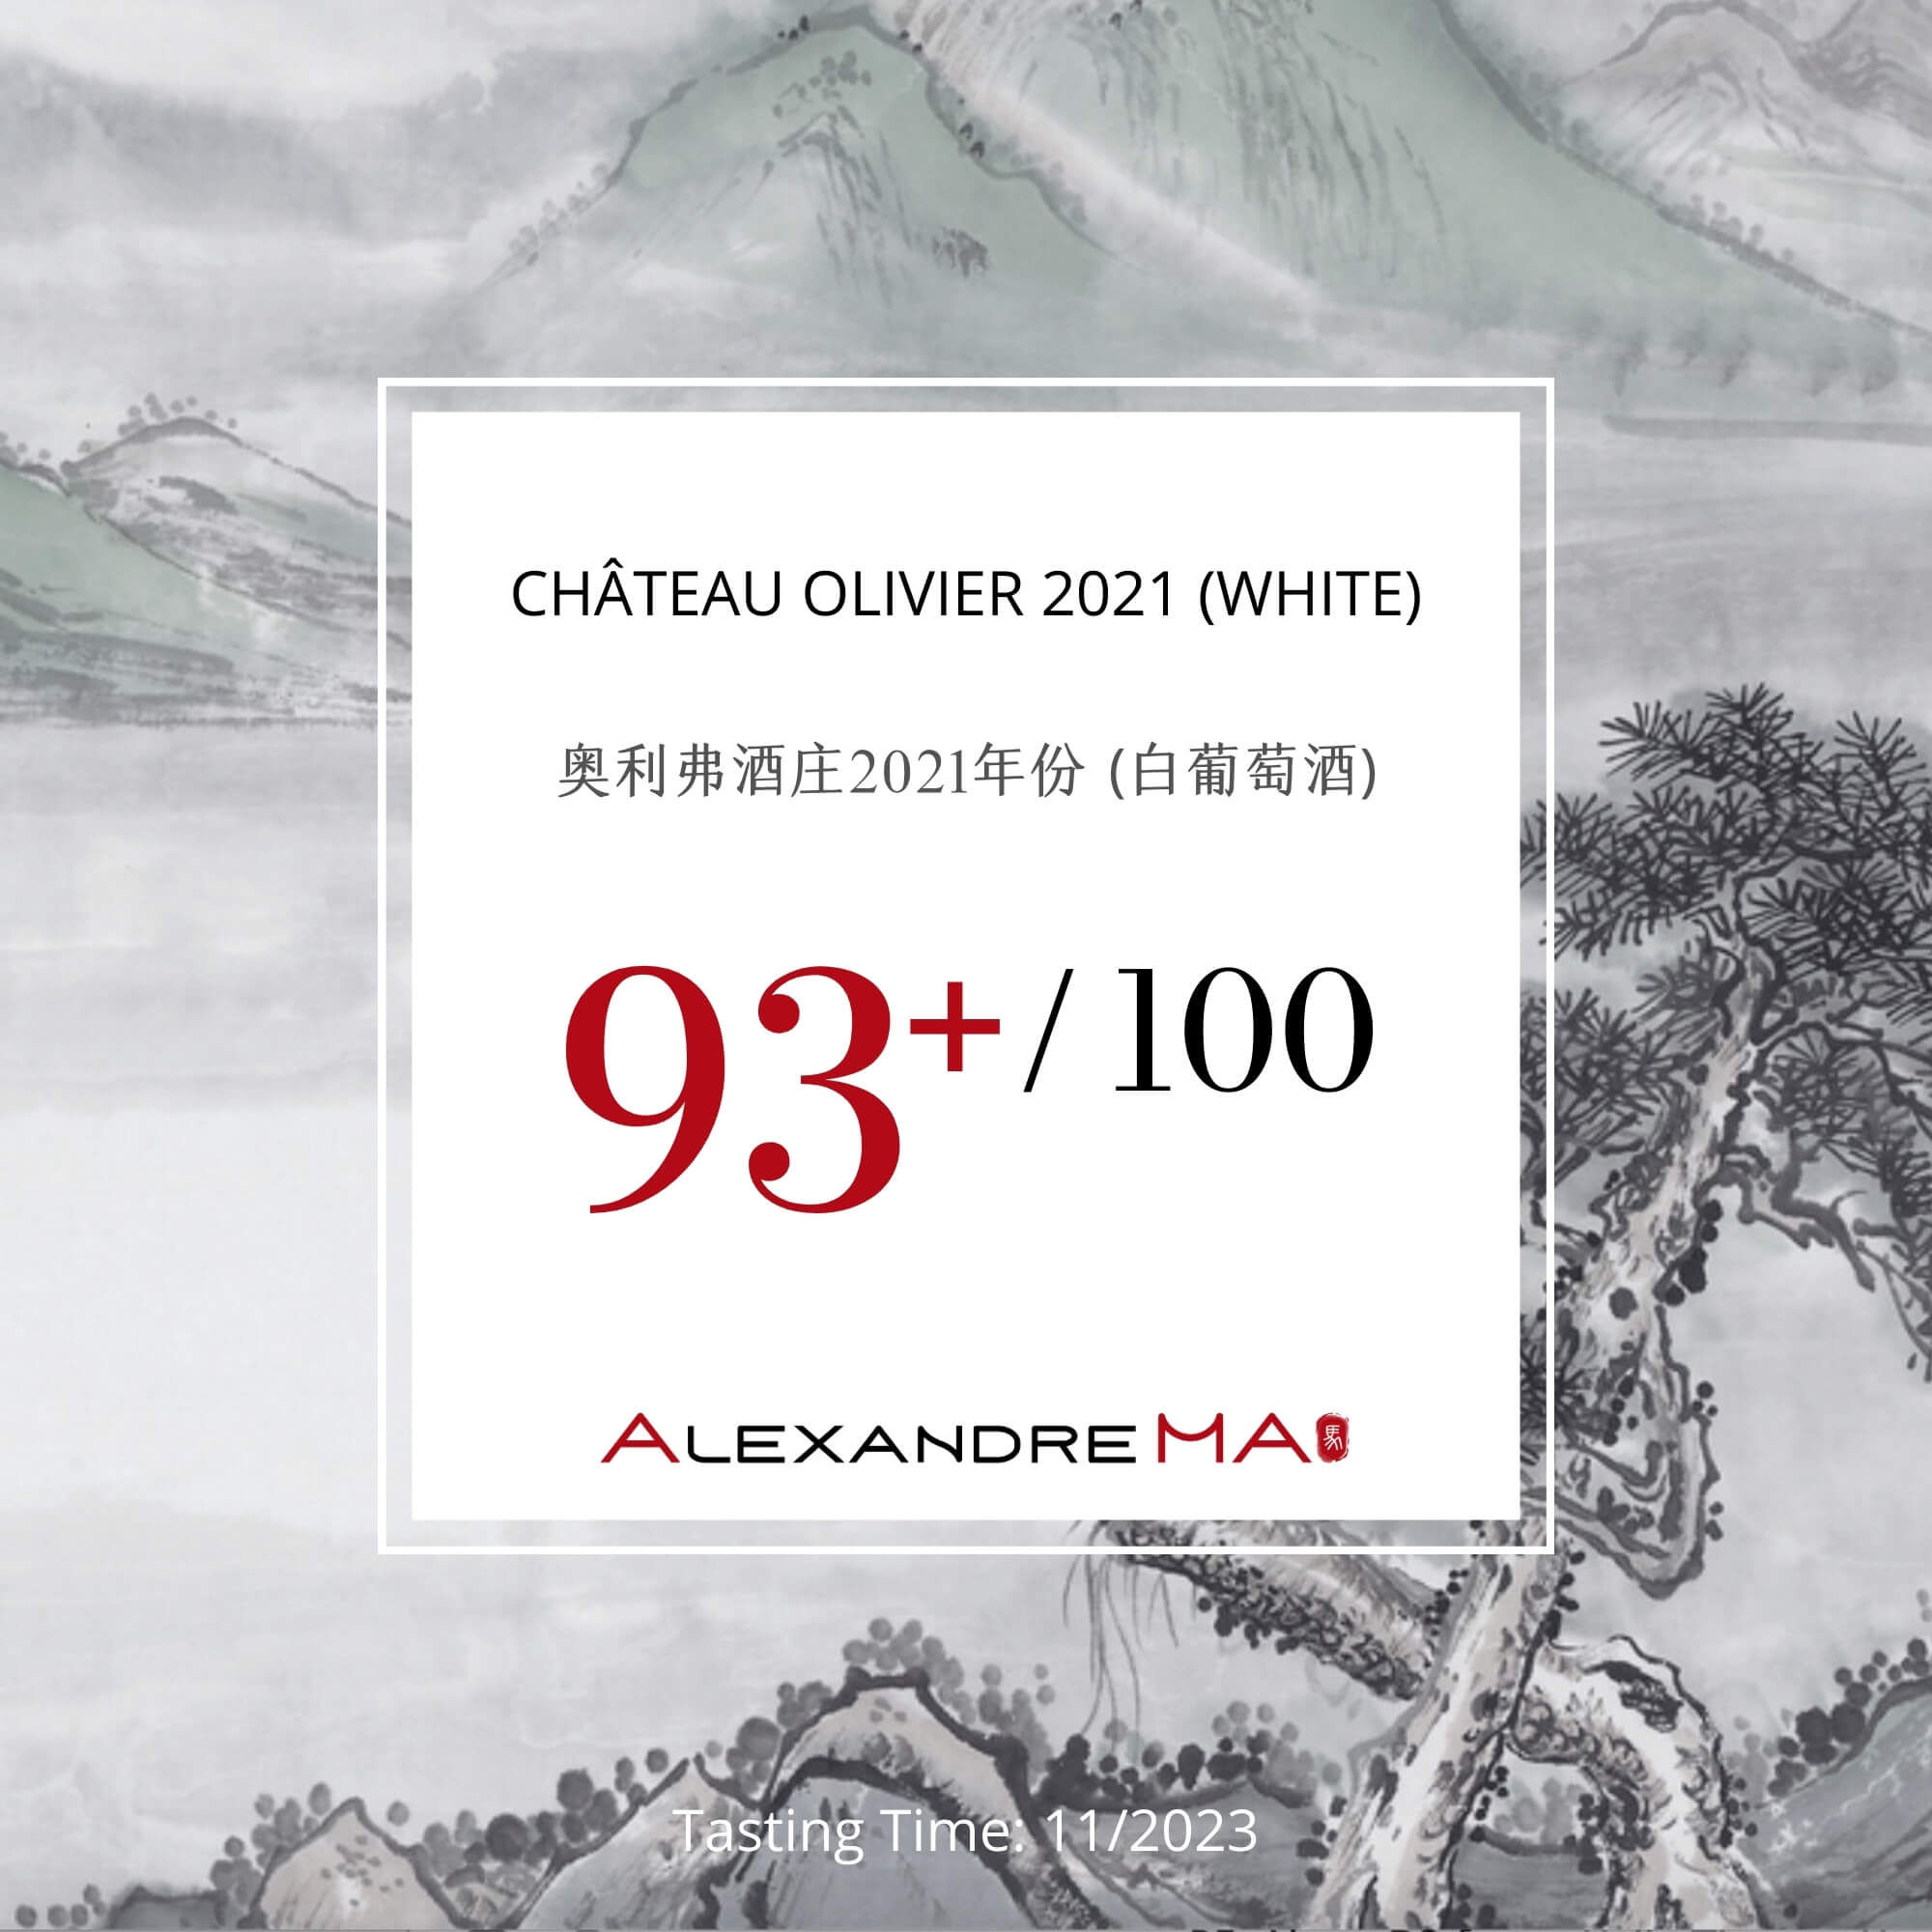 Château Olivier-white-2021 - Alexandre MA